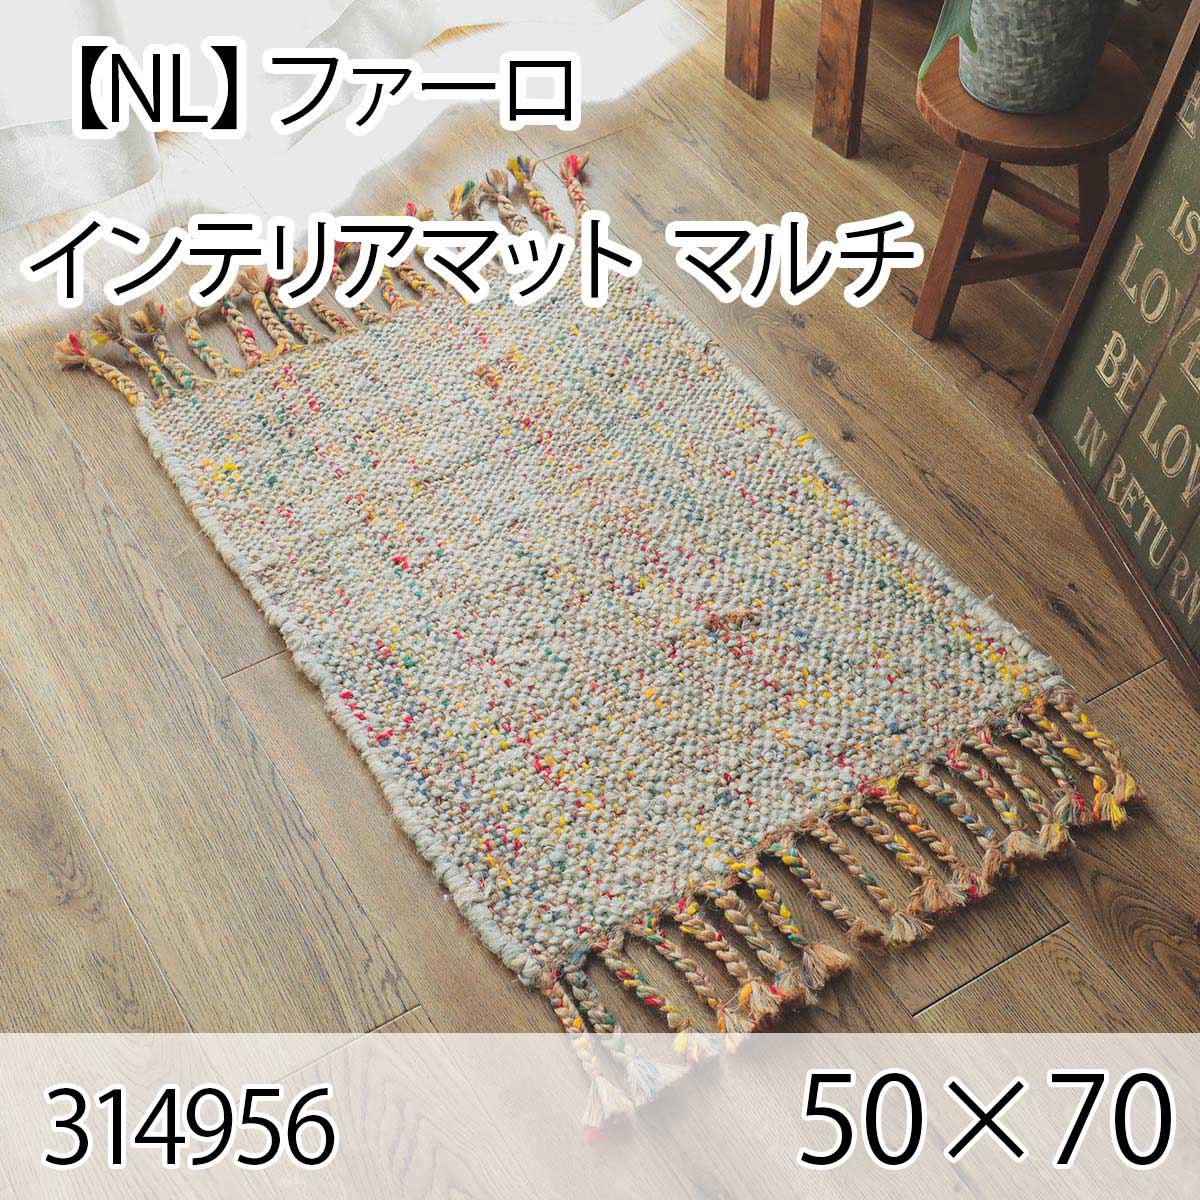 【NL】ファーロ インテリアマット 50cmx70cm マルチ